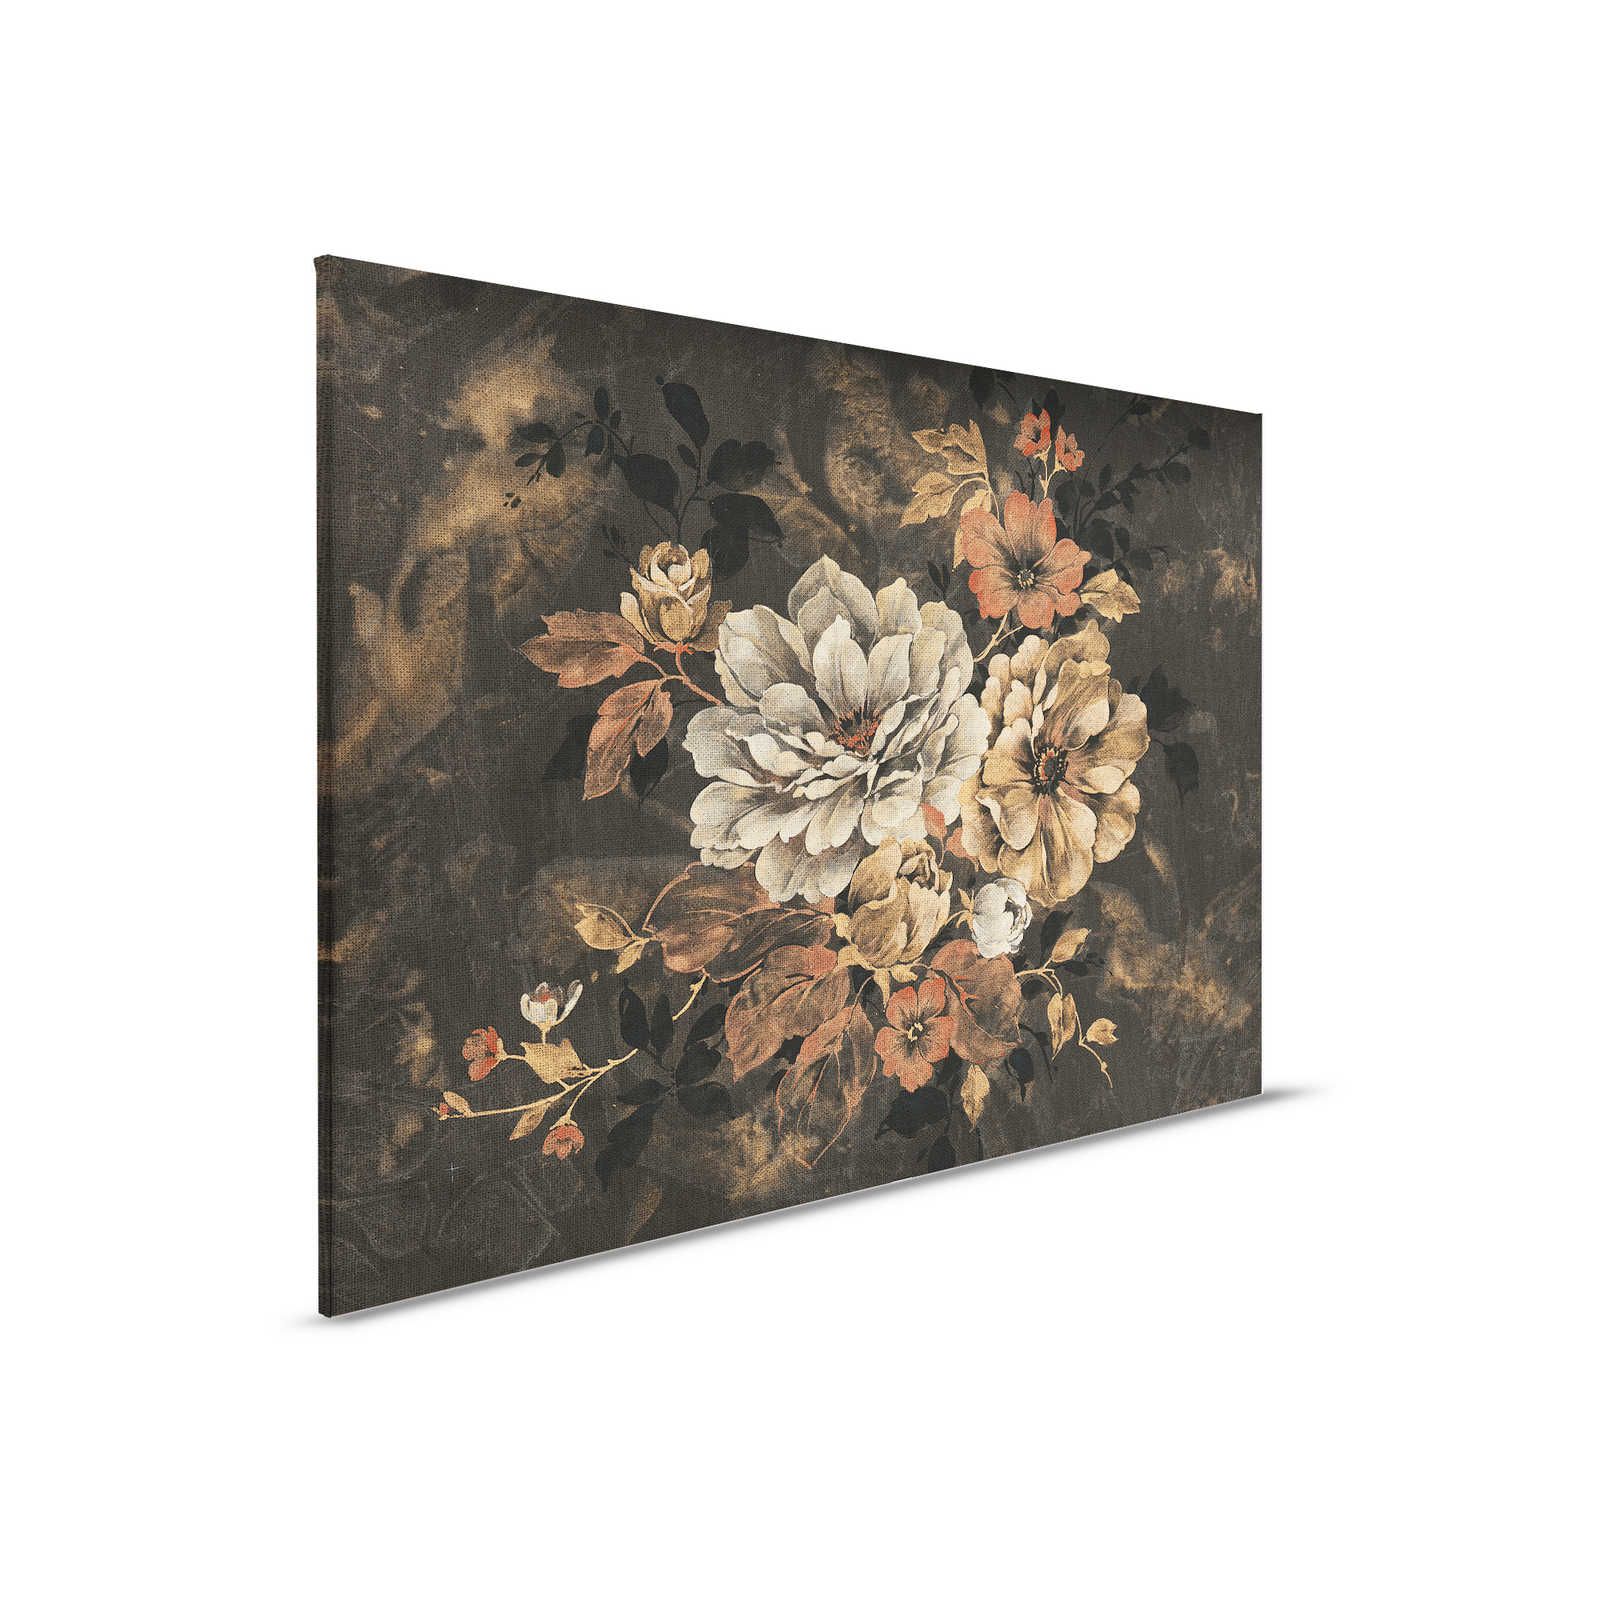 Quadro su tela Design floreale, pittura a olio in stile vintage - 0,90 m x 0,60 m
